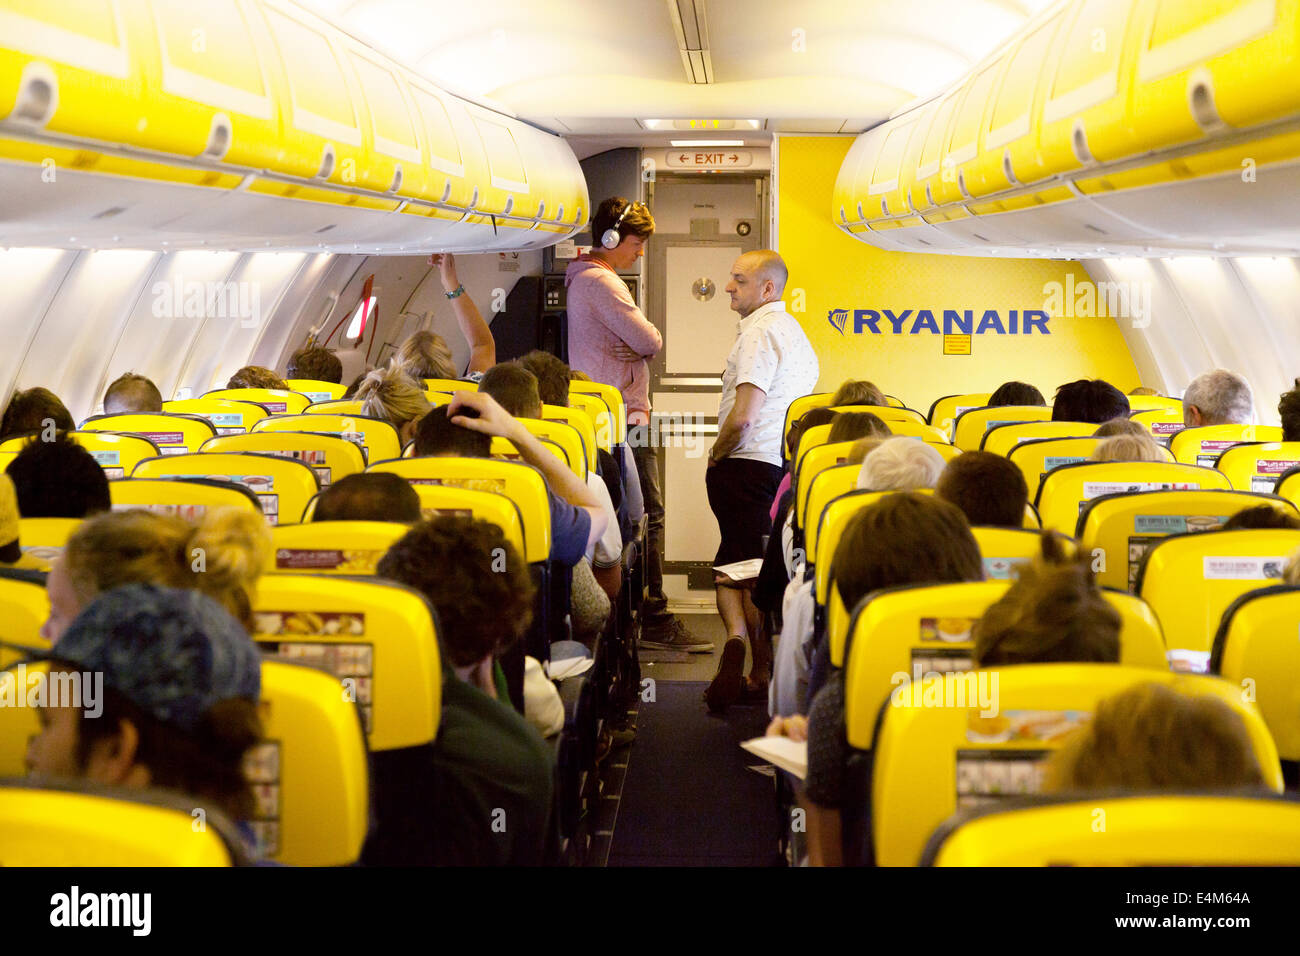 Les passagers dans une file d'attente pour les toilettes au cours d'un vol  Ryanair, intérieurs de cabine d'avion Photo Stock - Alamy